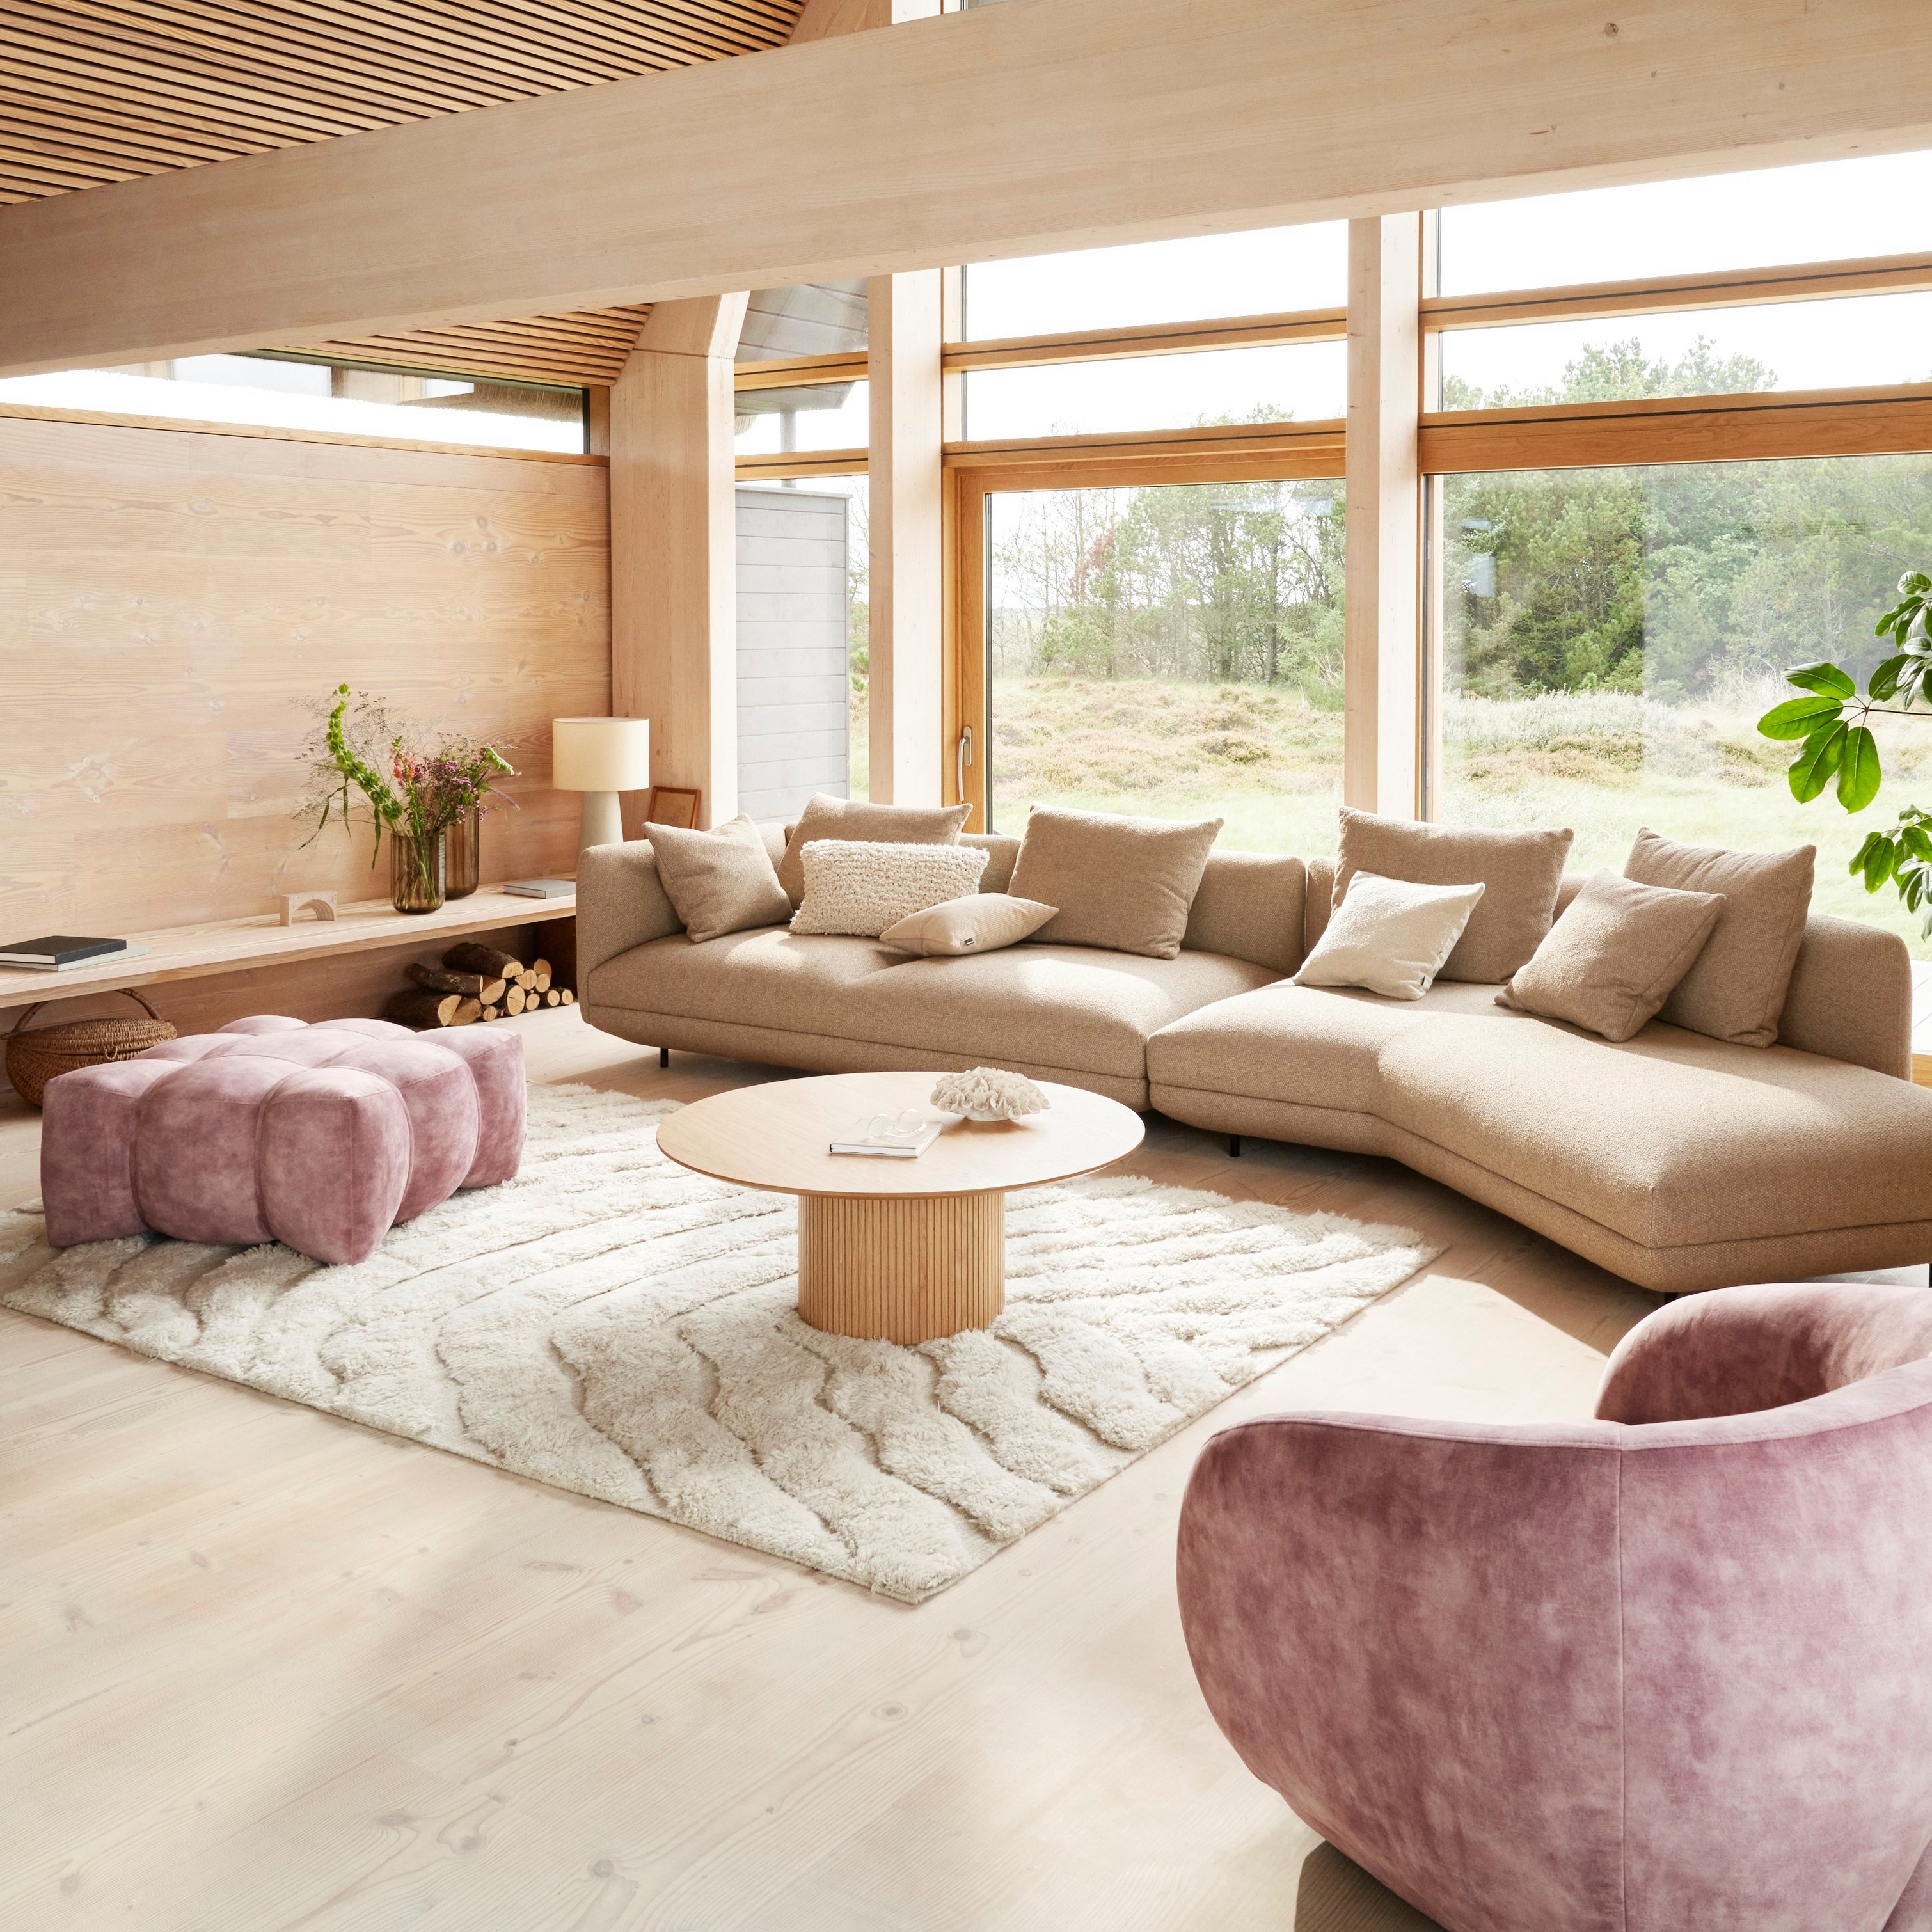 棕色 Lazio 面料衬垫 Salamanca 沙发在 A 字户型家居中打造温馨现代的起居空间。